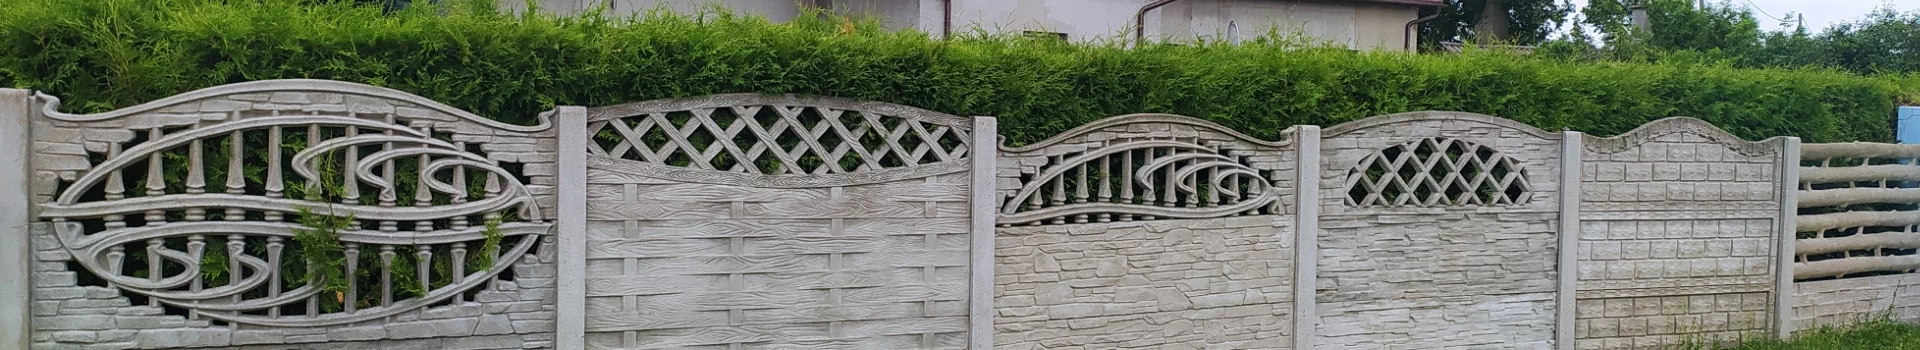 zdobione ogrodzenie betonowe